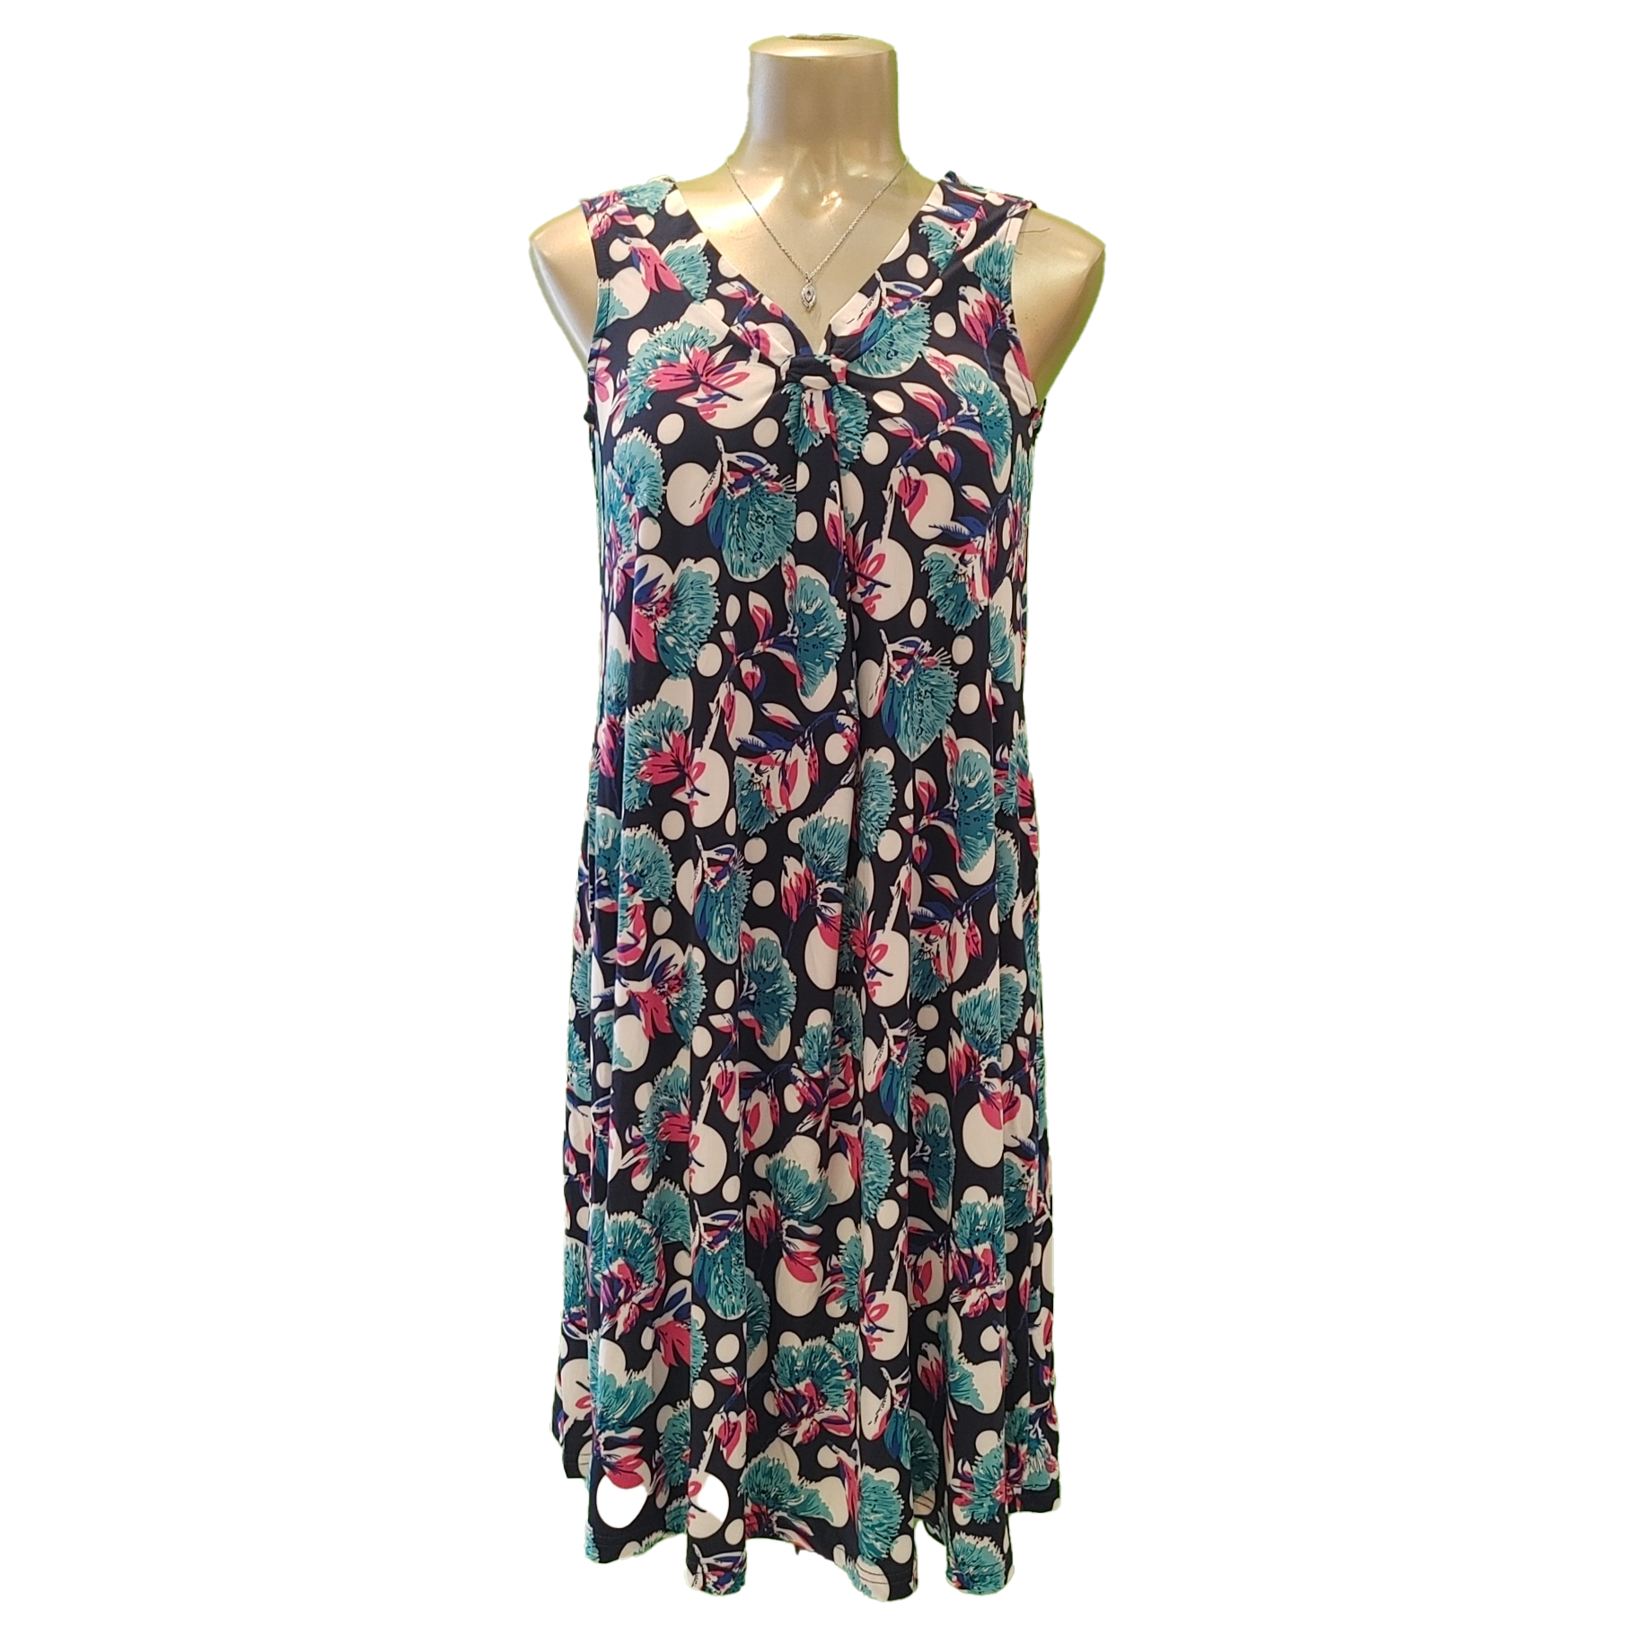 Sleeveless v-neck printed dress